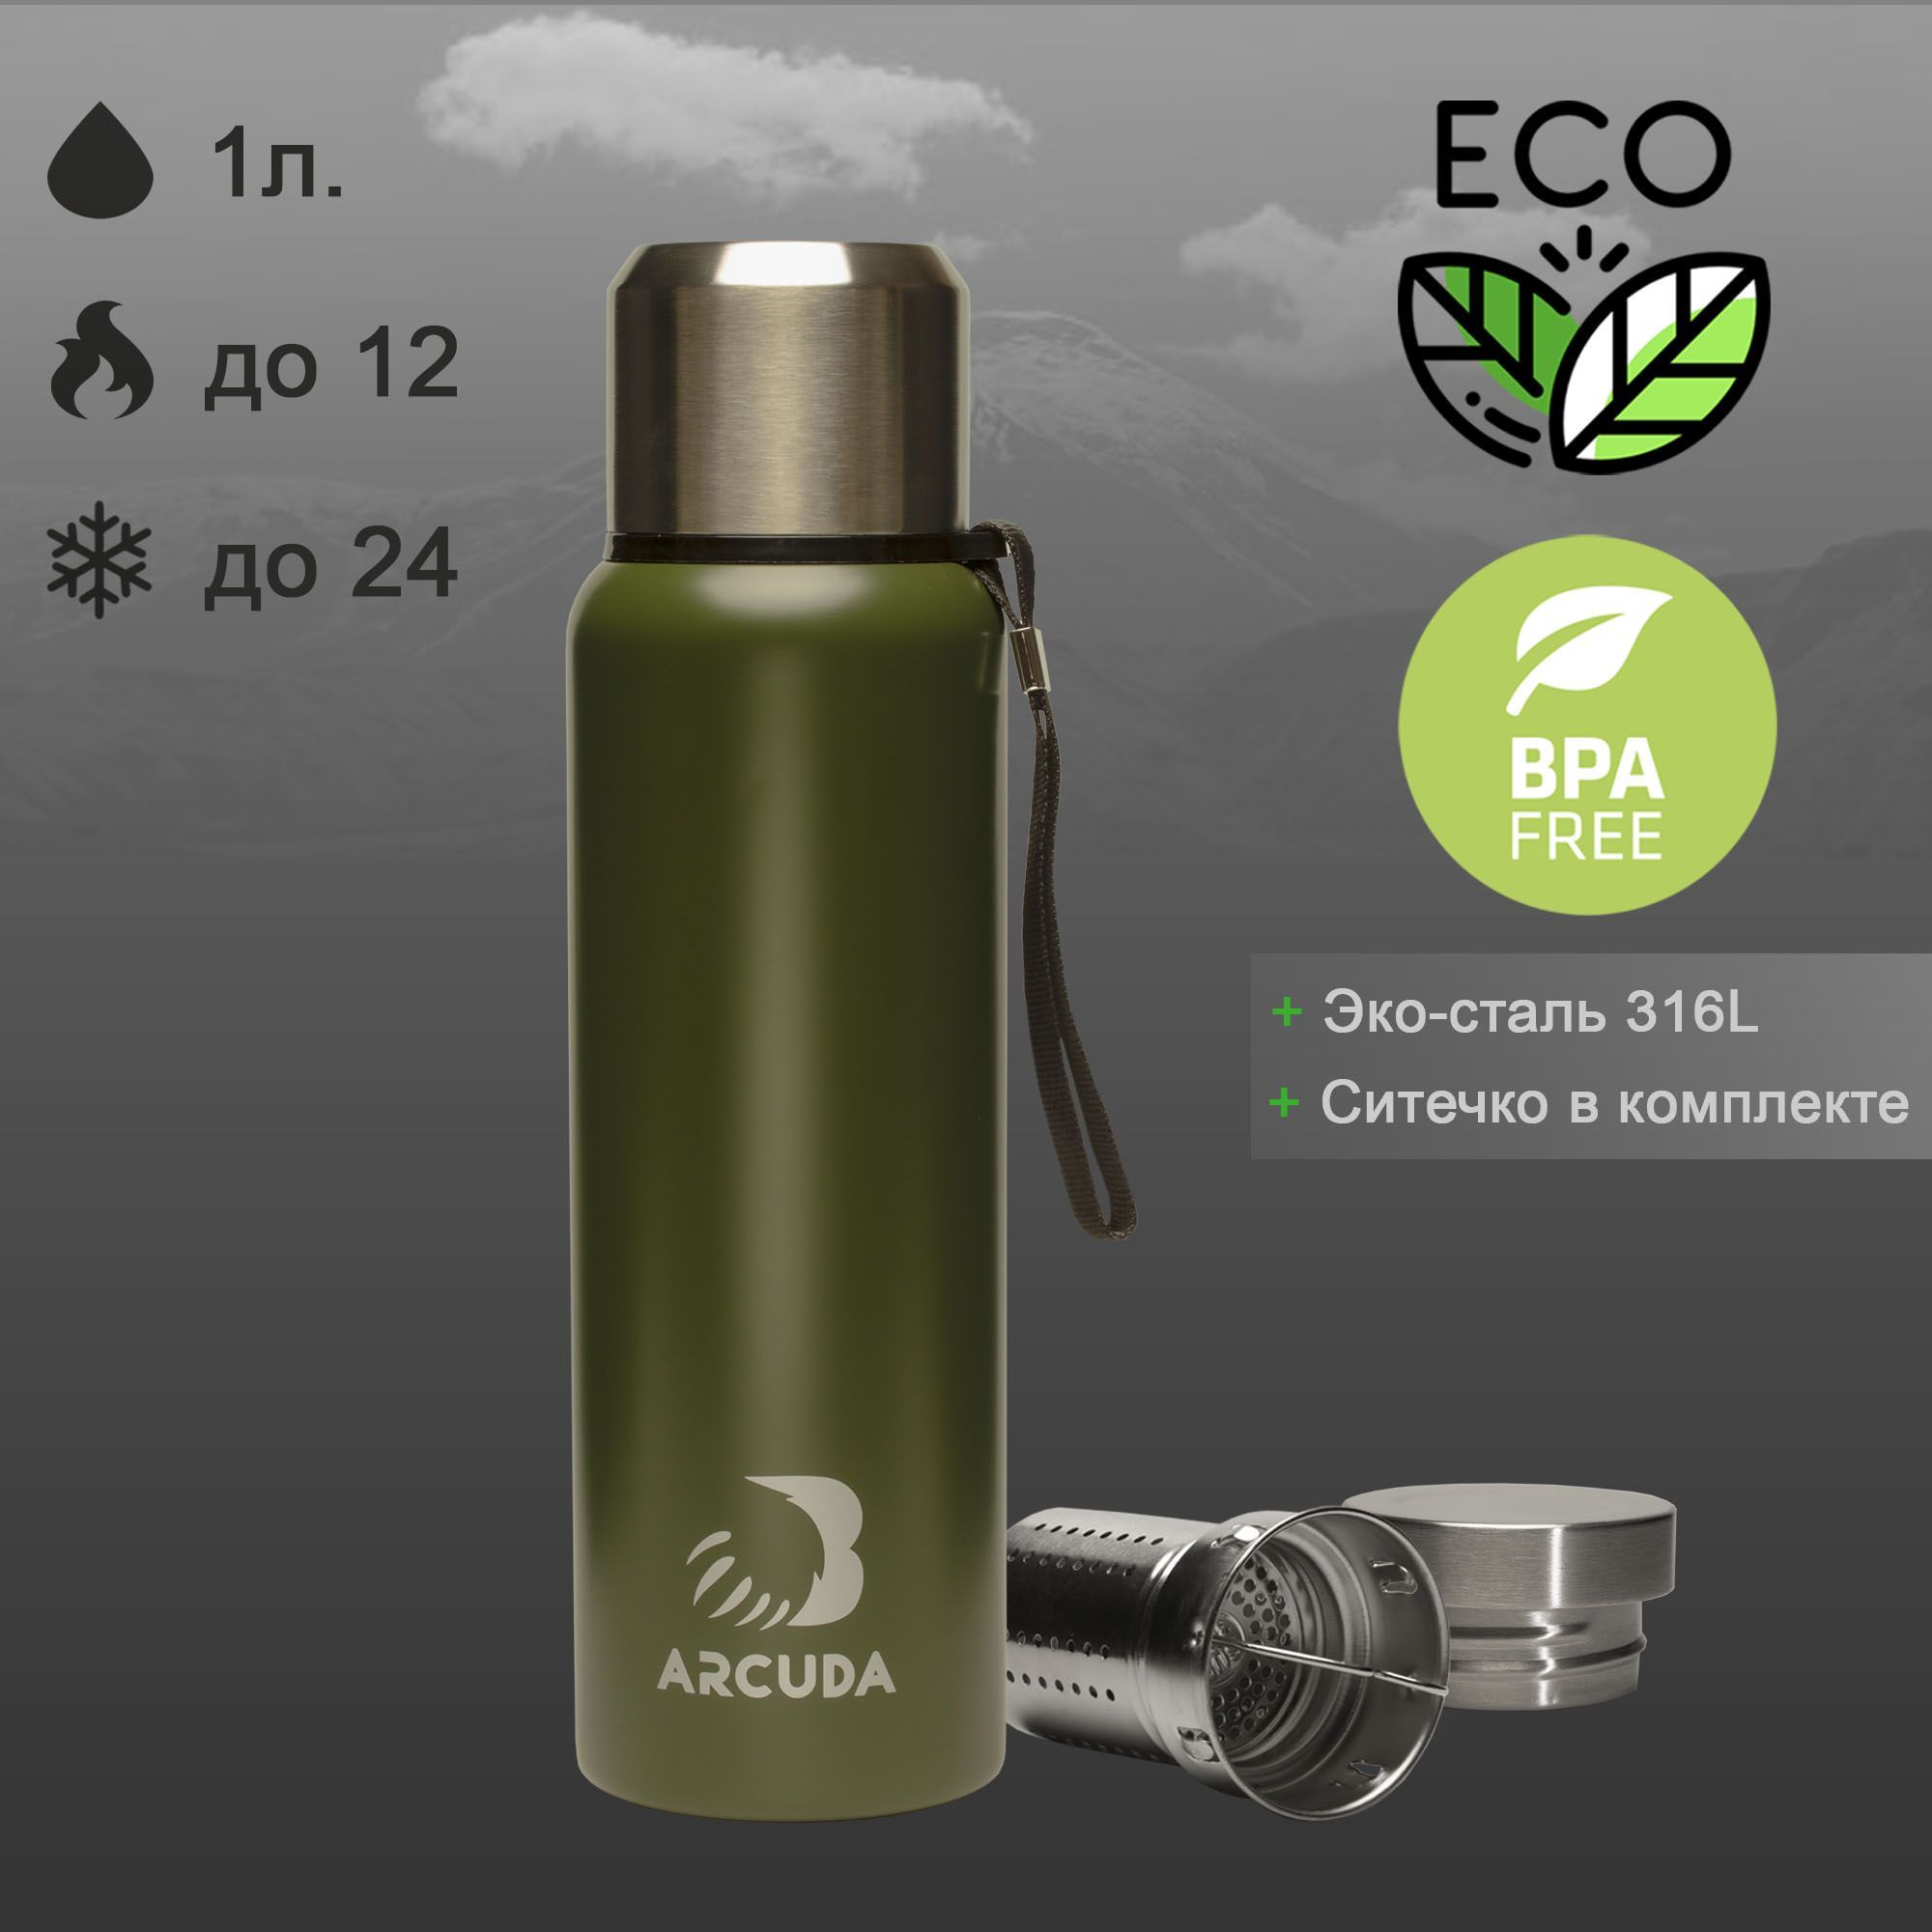 Термос ARCUDA ARC-Z85 Eco seria, крышка-чашка, 1 литр, темно-зеленый